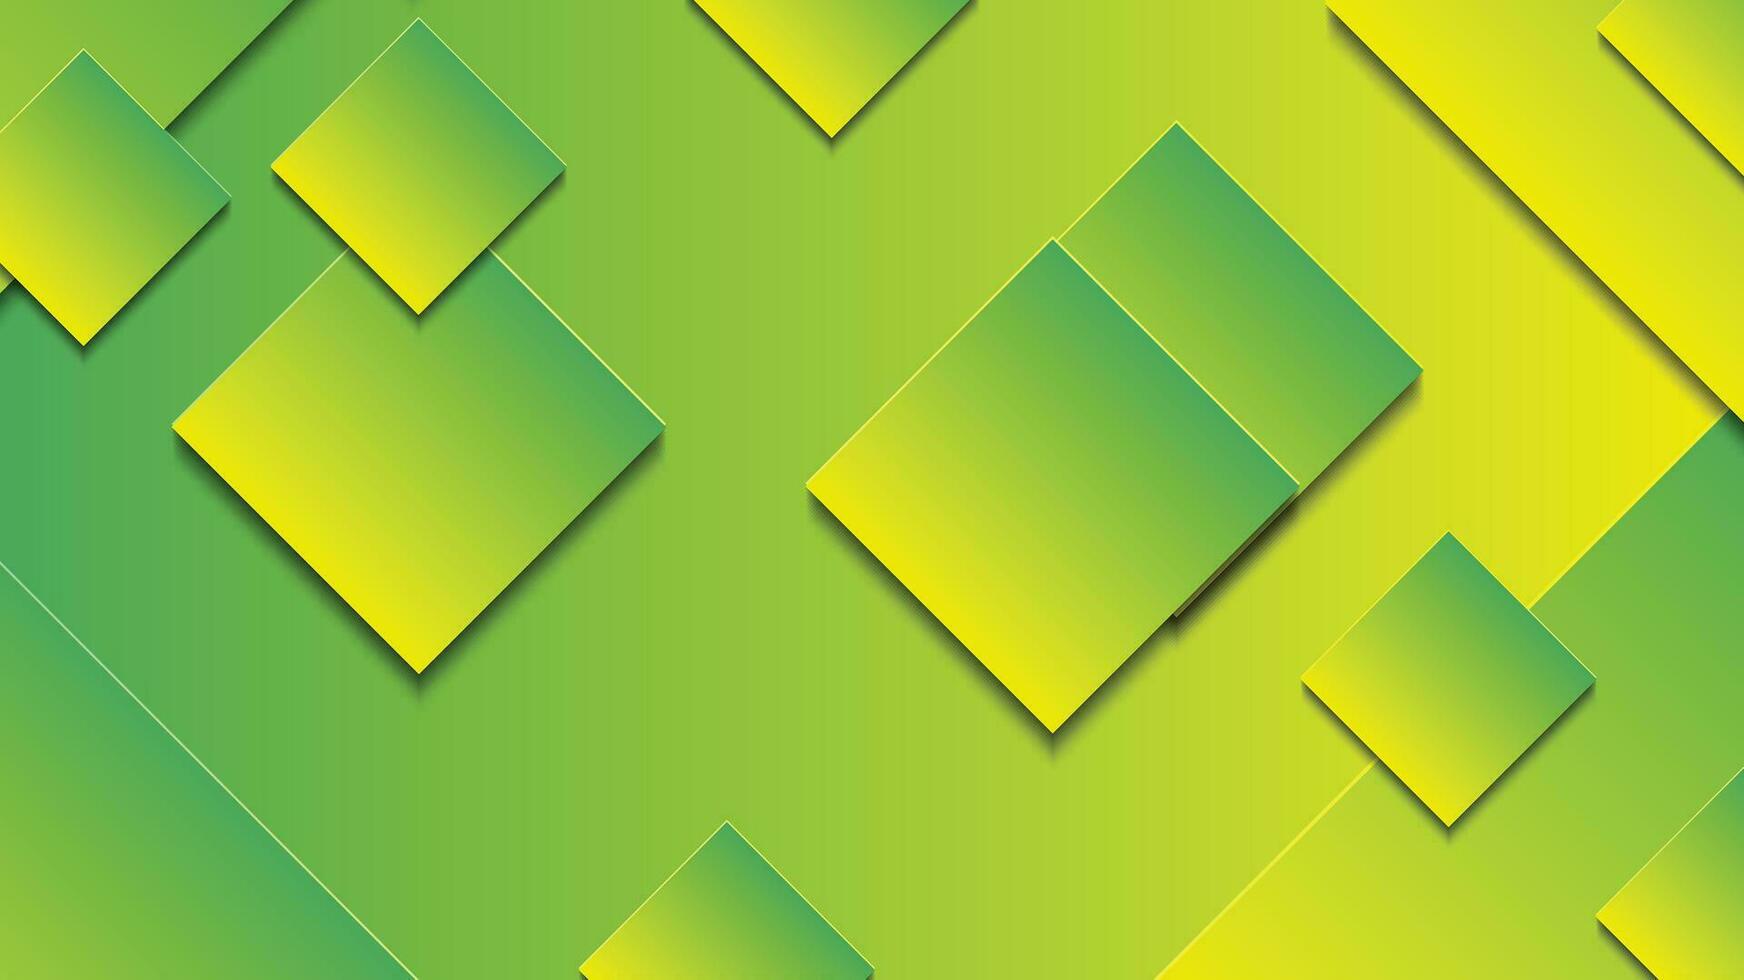 abstrato verde e amarelo gradiente fundo com retângulo linhas vetor